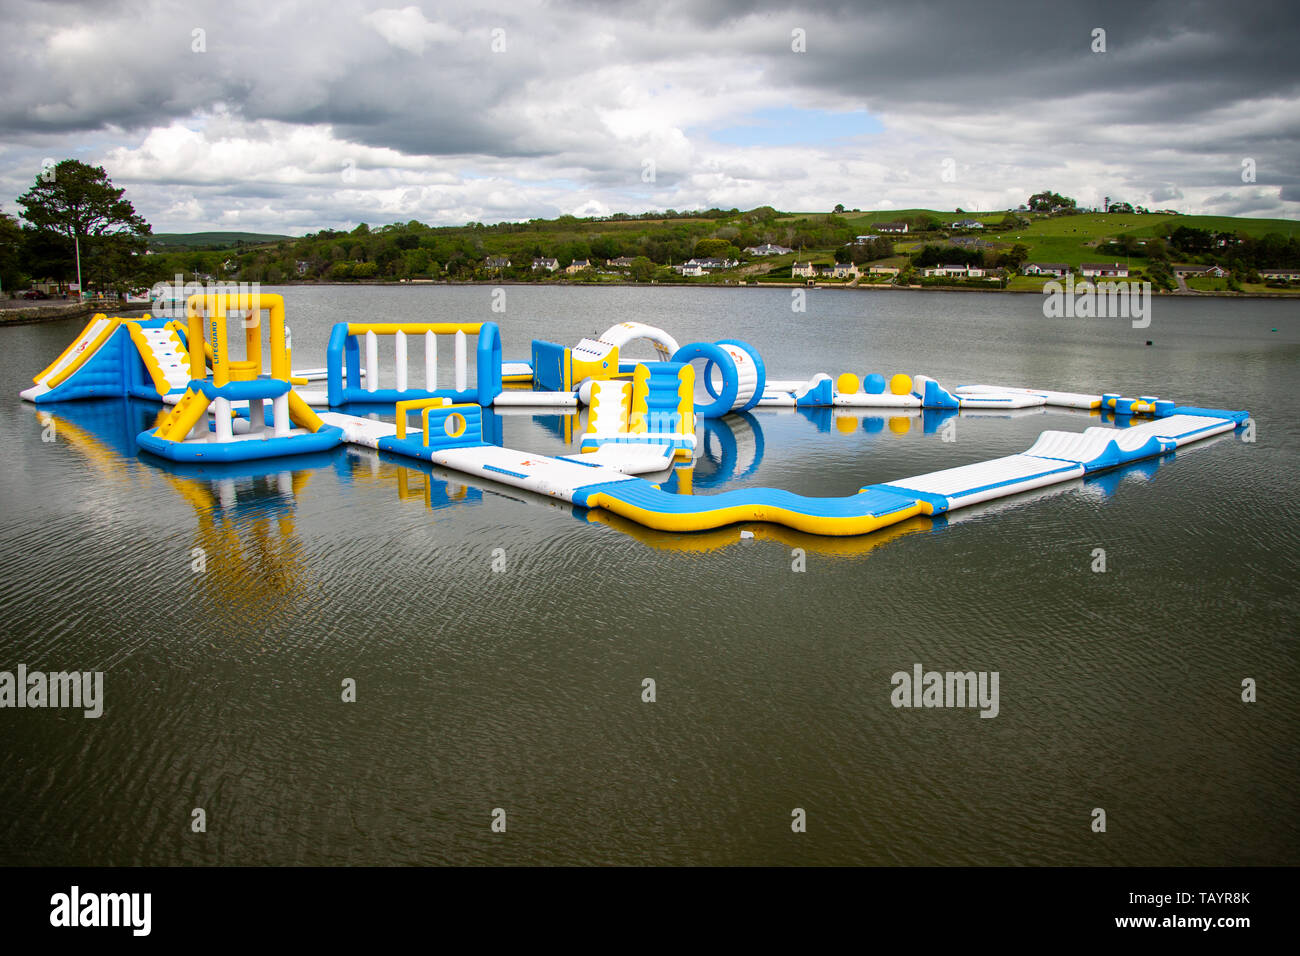 Floating Abenteuer Spielplatz auf einem flachen See unter grauen Wolken Stockfoto